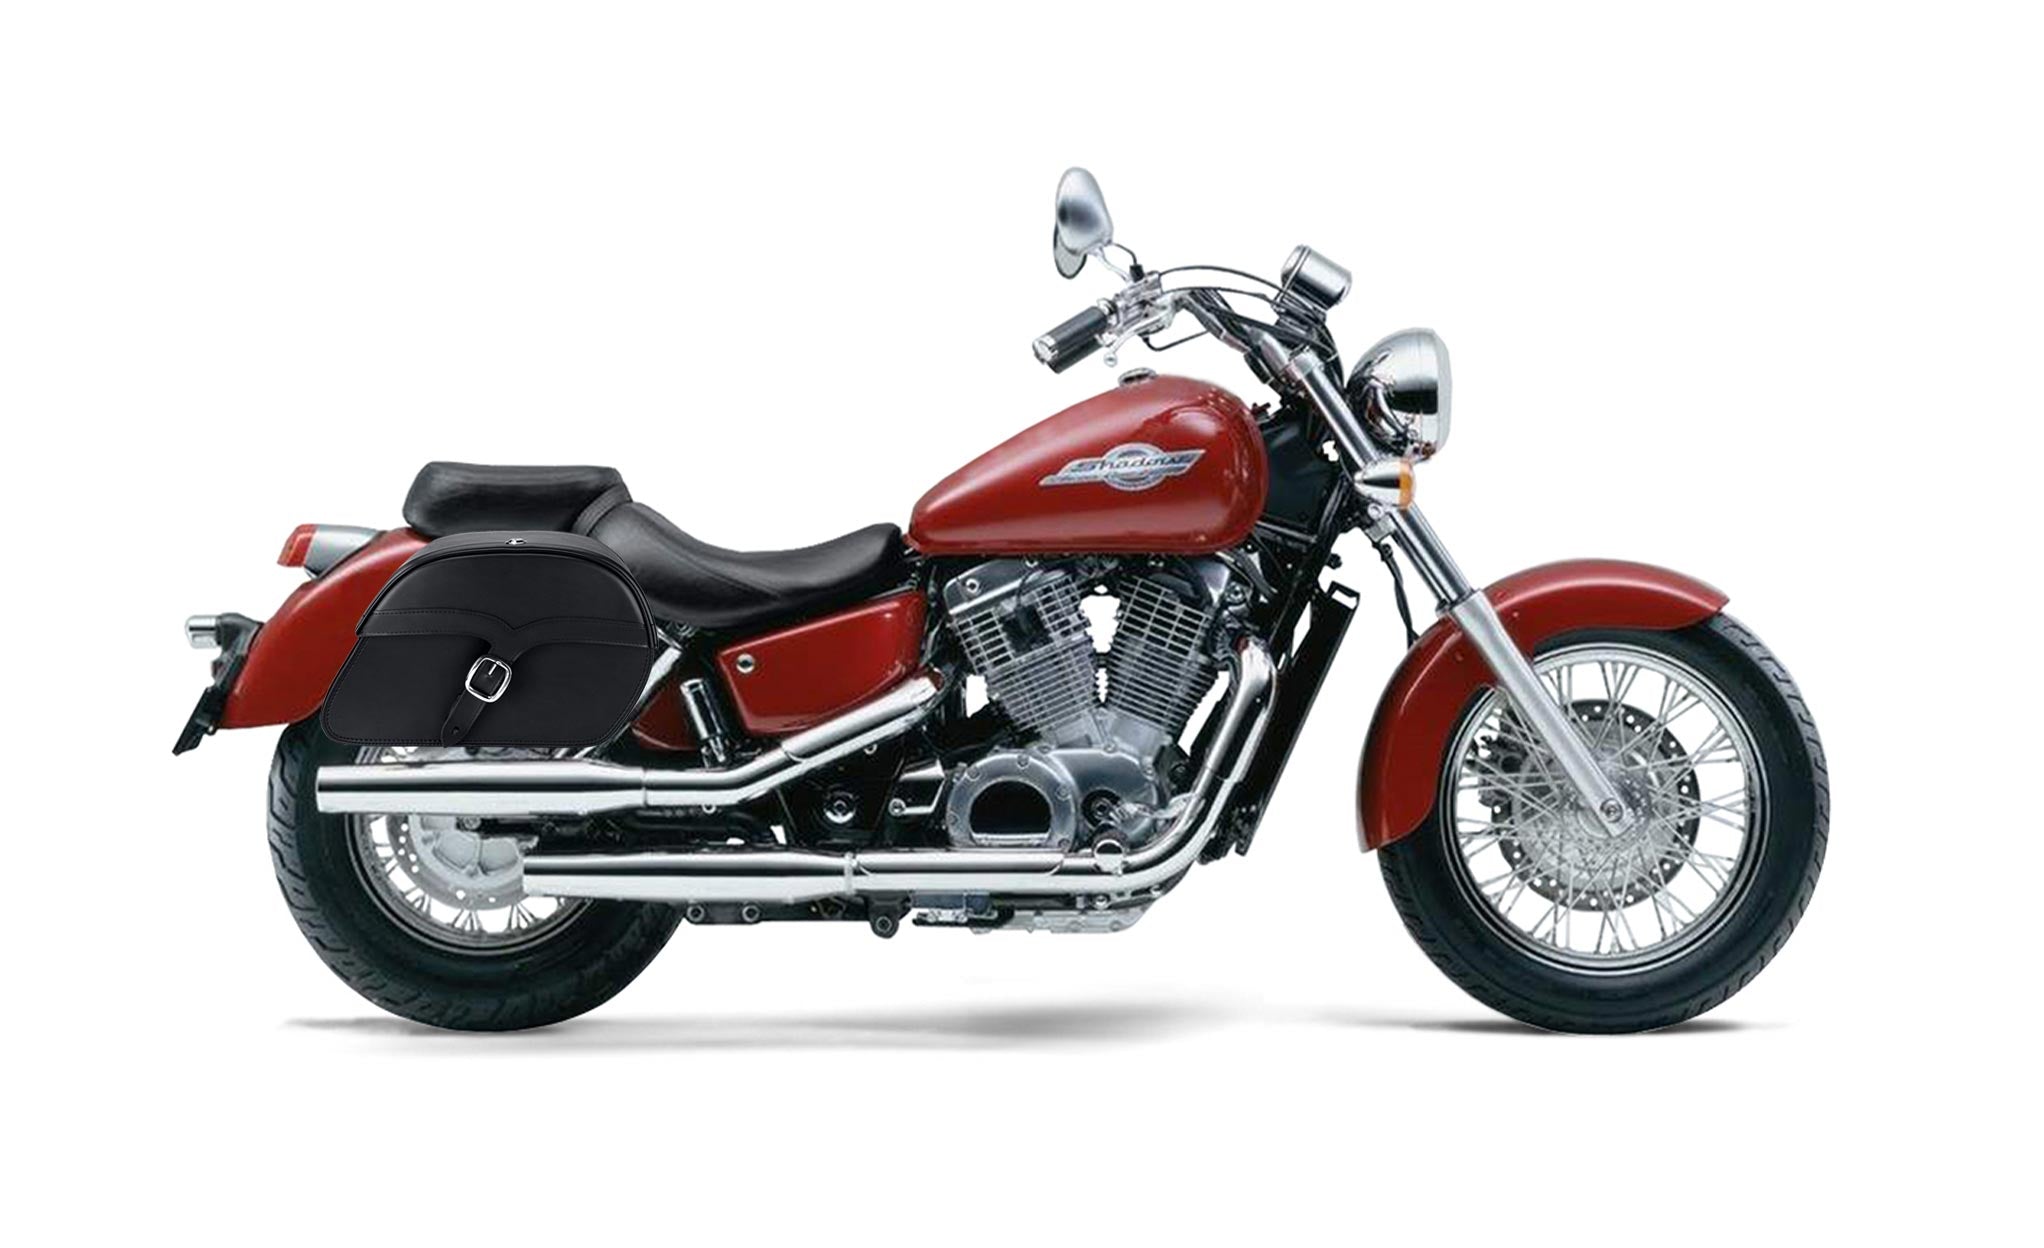 Viking Vintage Medium Honda Shadow 1100 Ace Leather Motorcycle Saddlebags on Bike Photo @expand